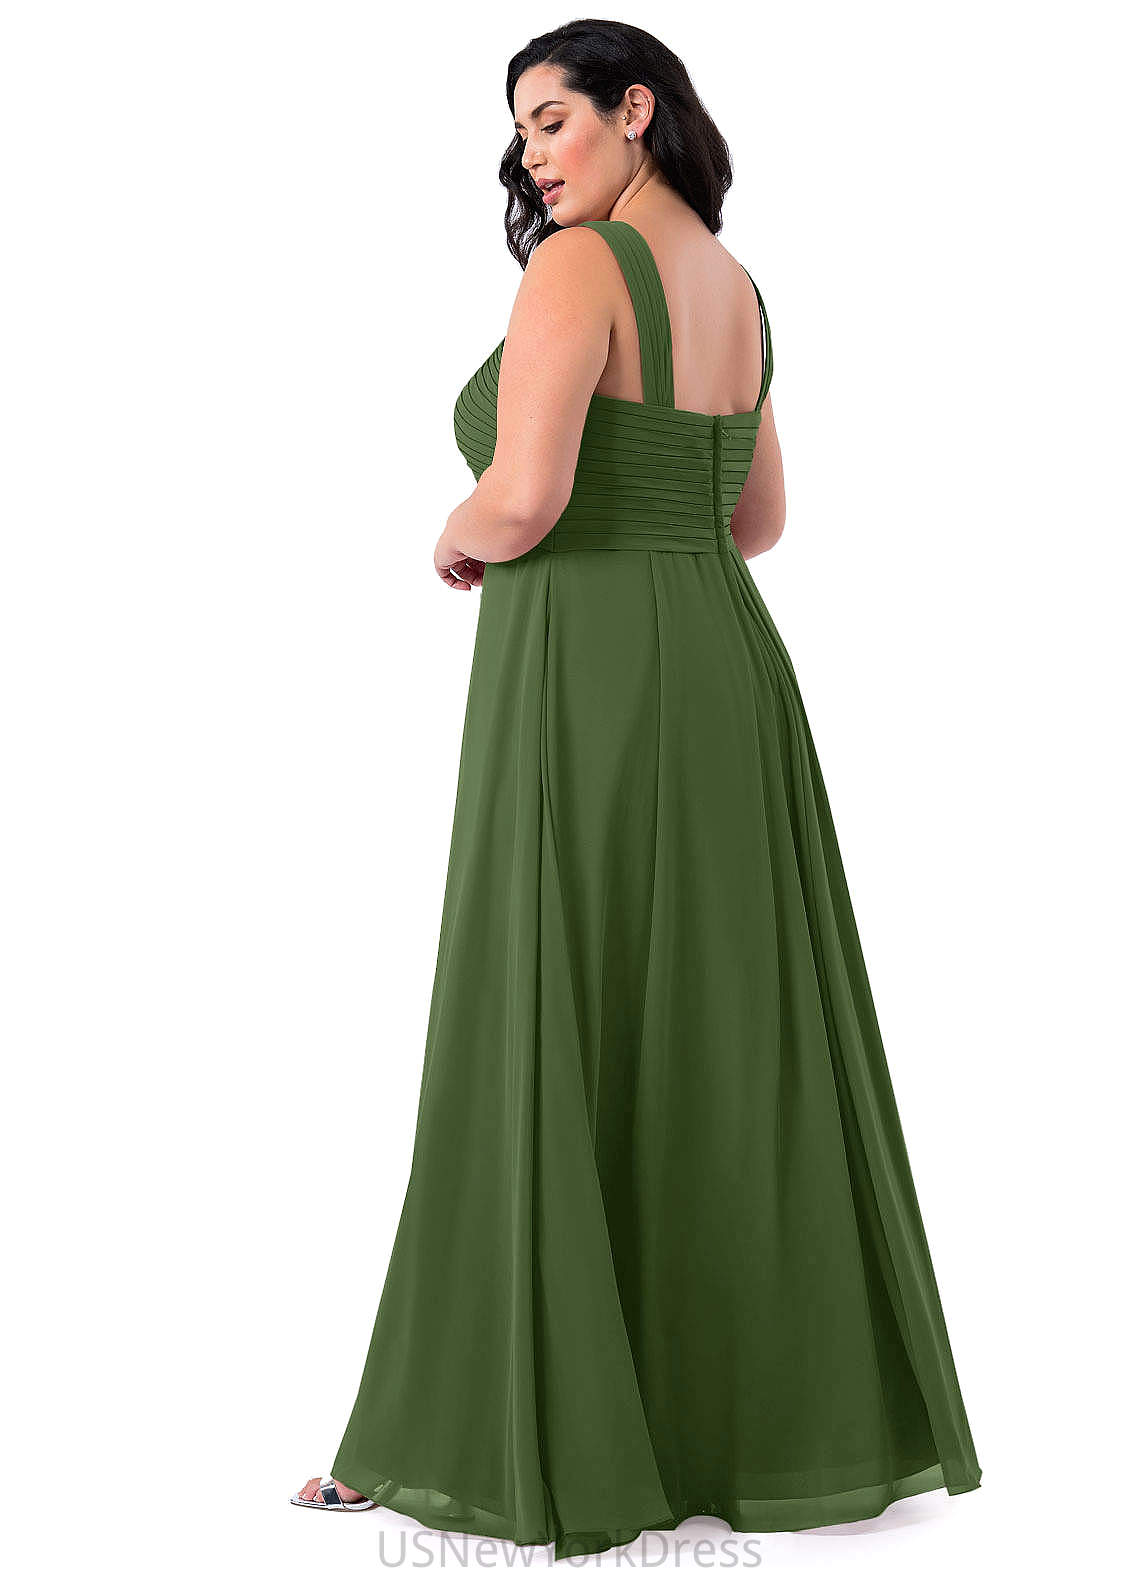 Elizabeth V-Neck A-Line/Princess Sleeveless Natural Waist Floor Length Bridesmaid Dresses